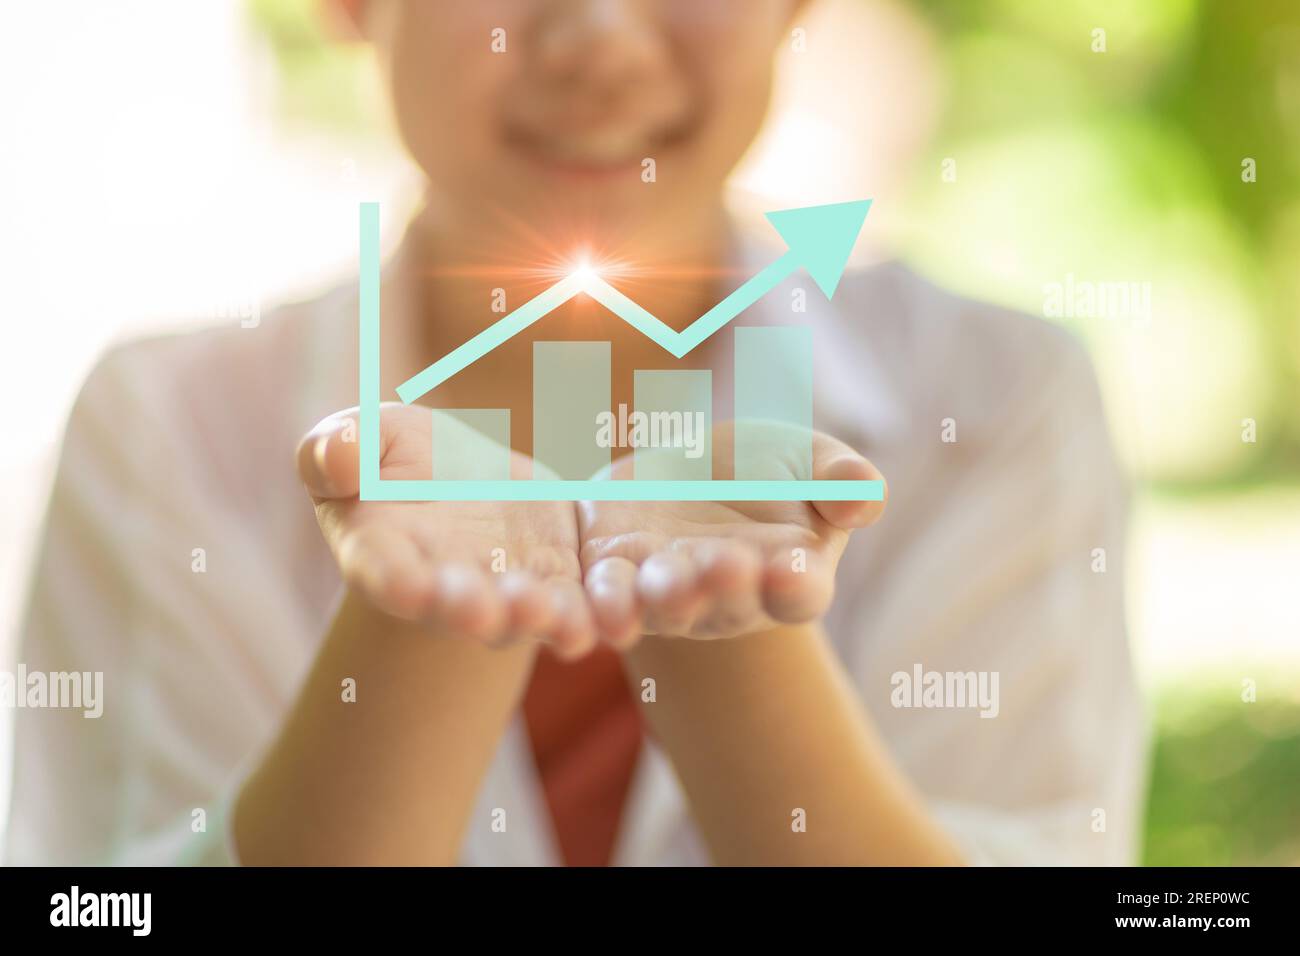 Chatsymbol für Geschäftsgewinn auf der glücklichen Teenagerhand für gute Vermögensinvestition, Geld sparen Lifestyle-Konzept. Stockfoto